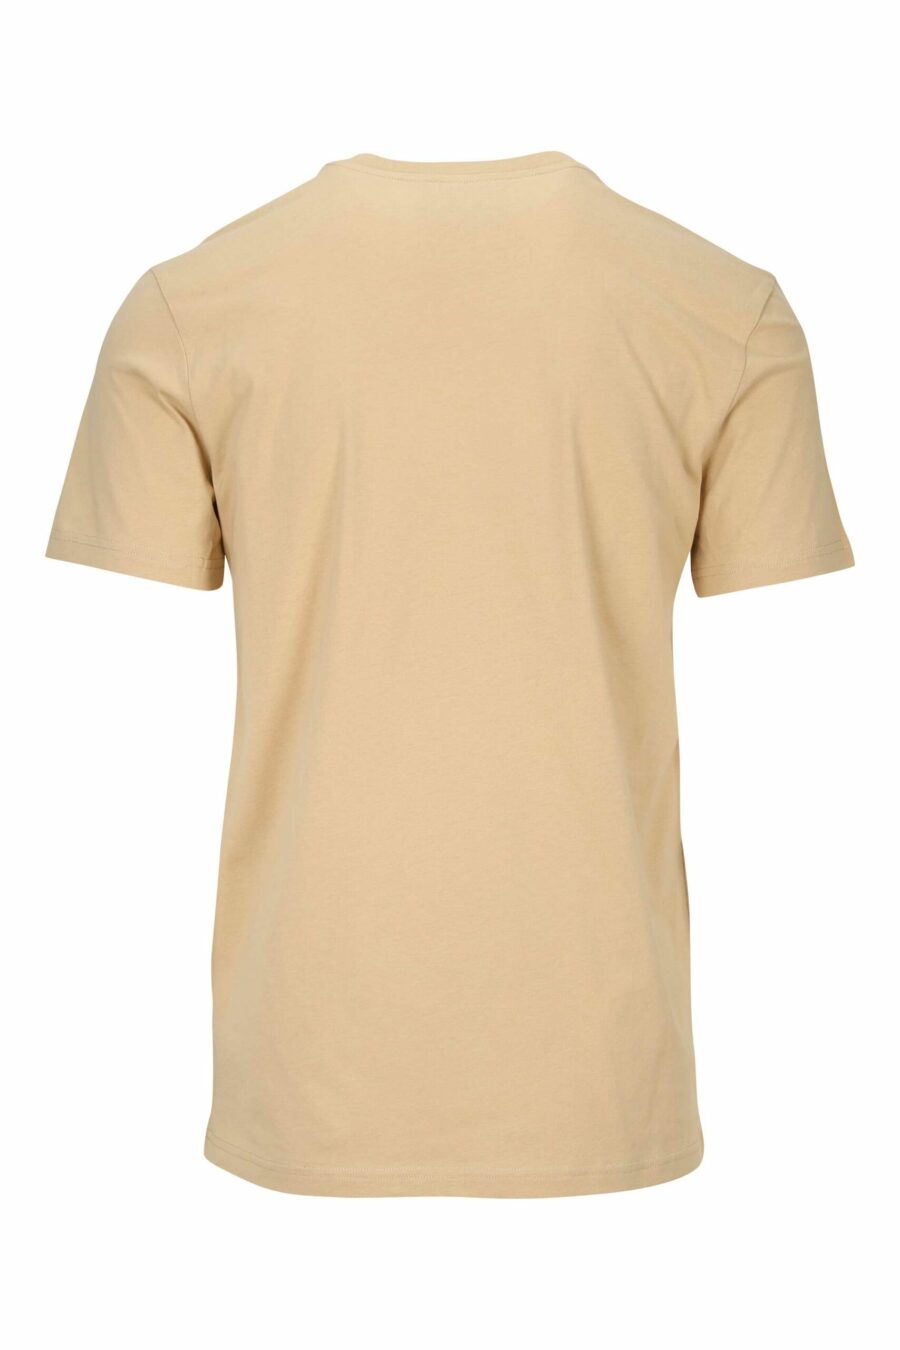 T-shirt beige en coton bio avec maxilogue noir classique - 667113391472 1 scaled